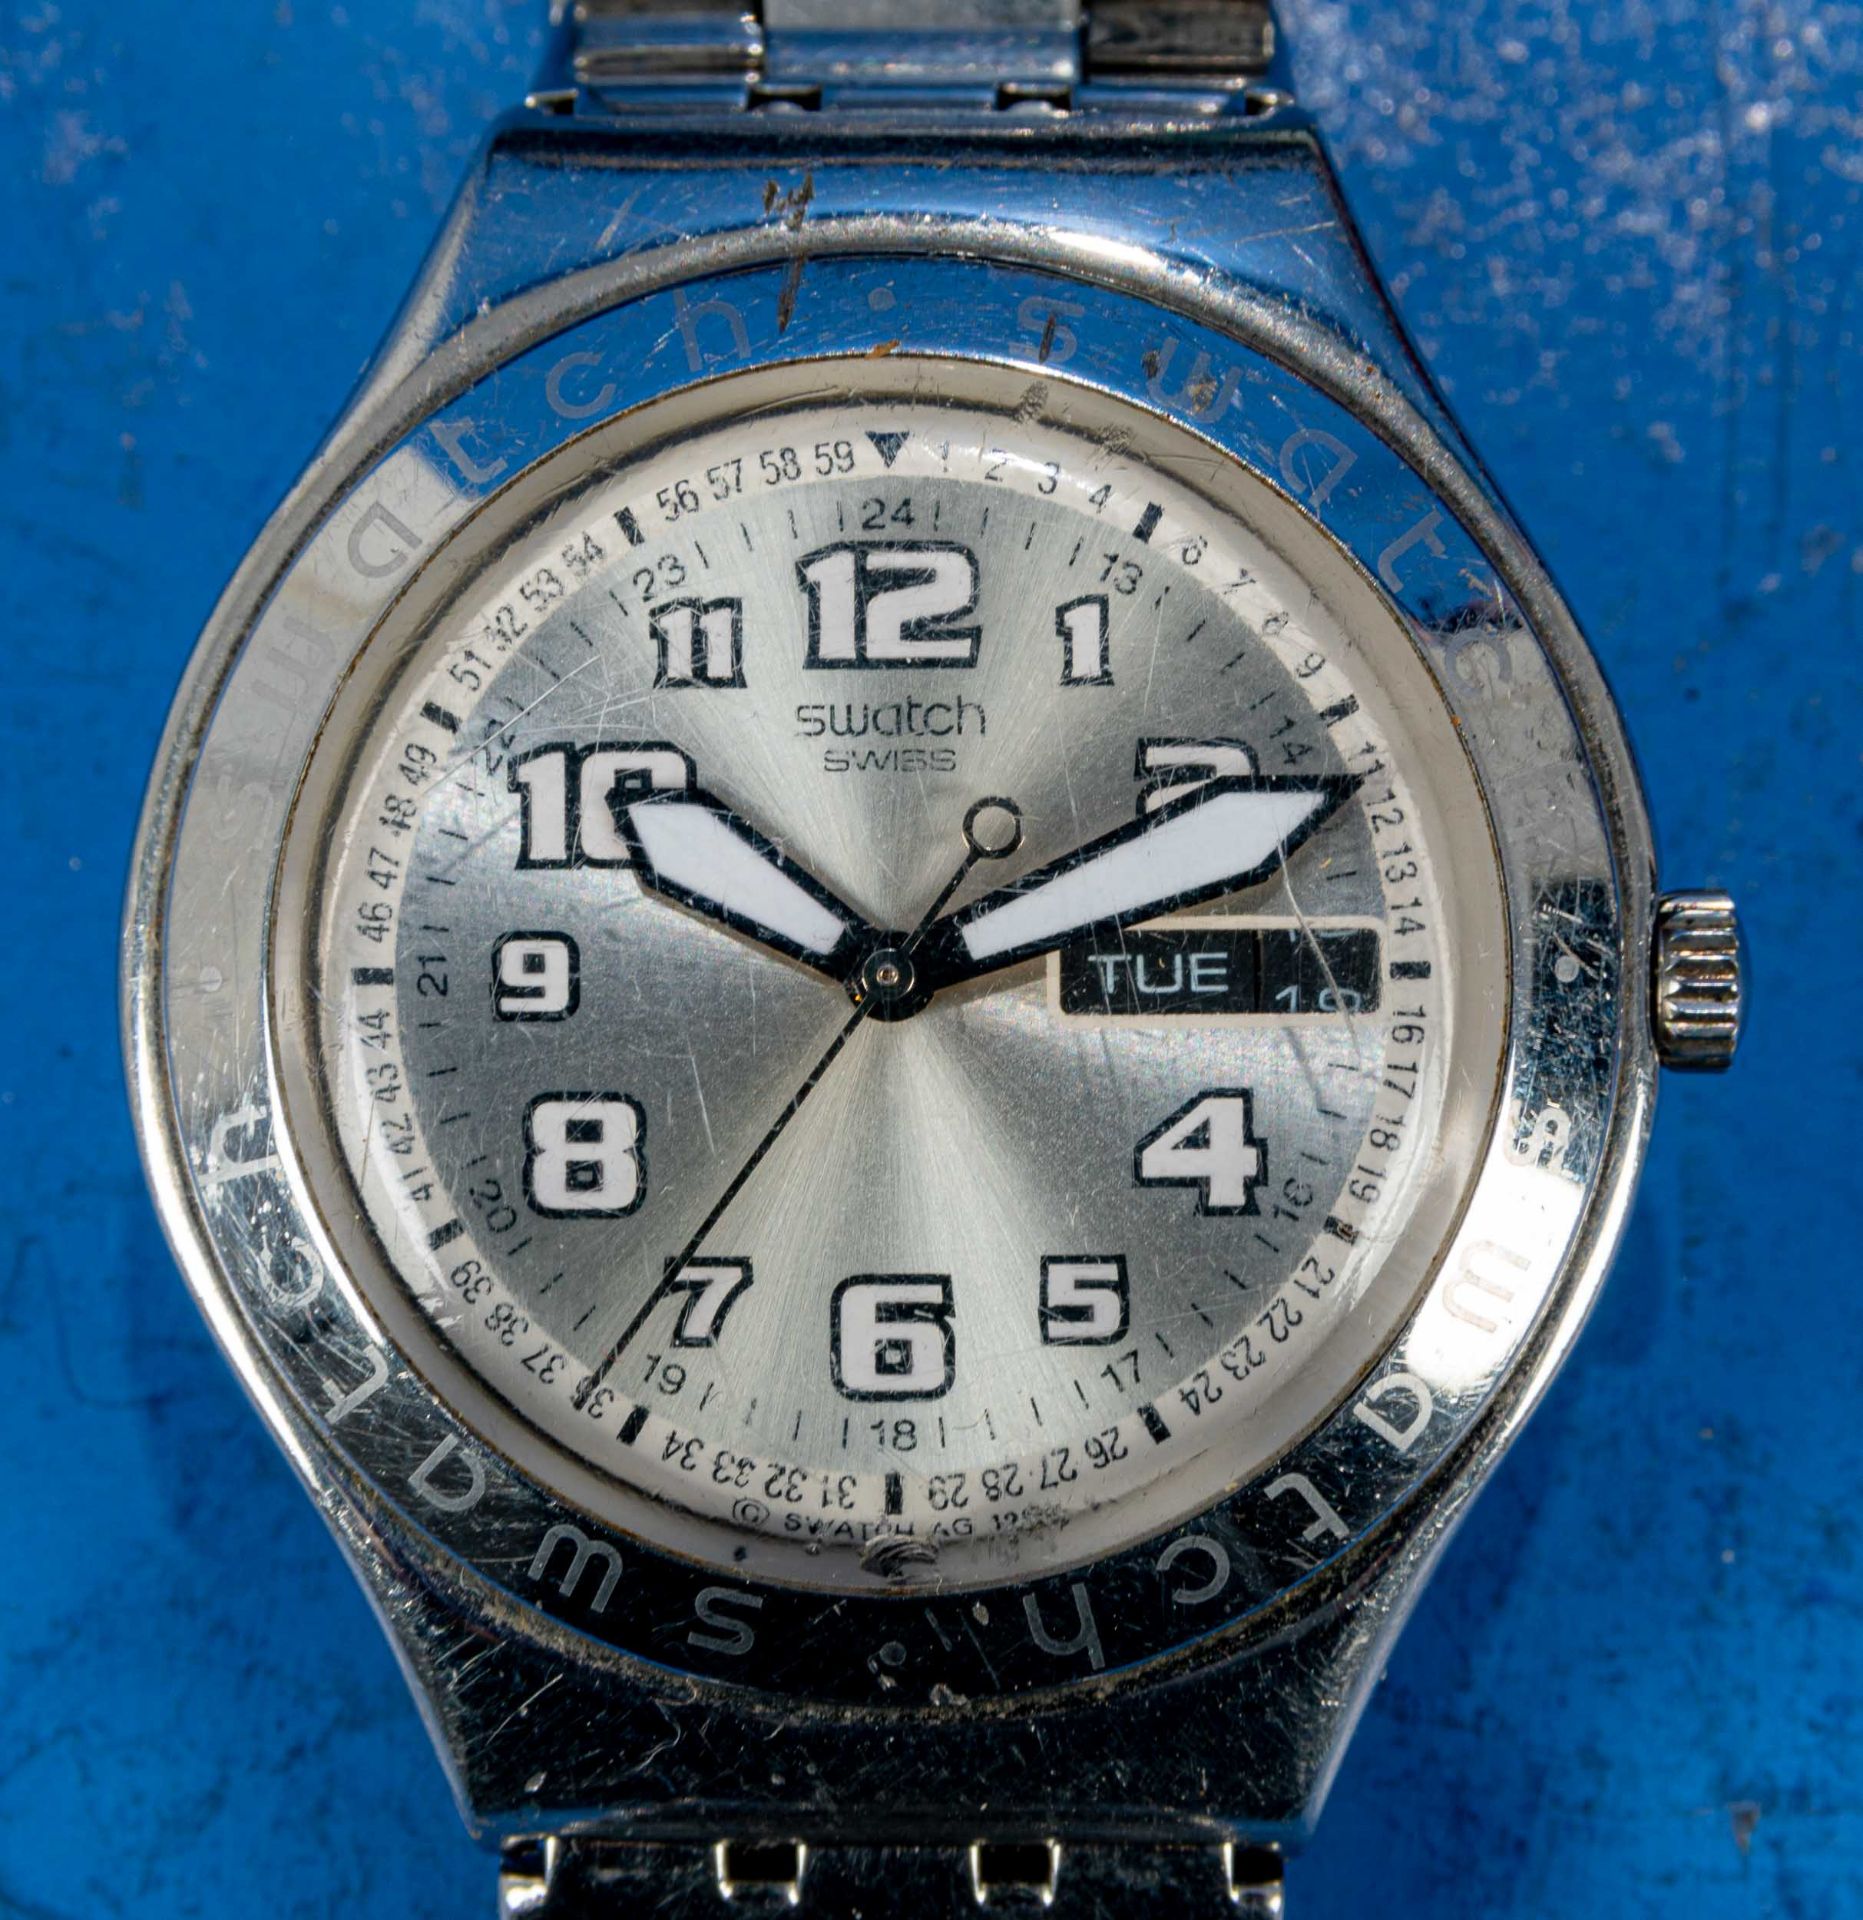 7teilige Uhrensammlung, u. a. der Marke Swatch; versch. Alter, Größen, Materialien, Hersteller, Wer - Bild 8 aus 8